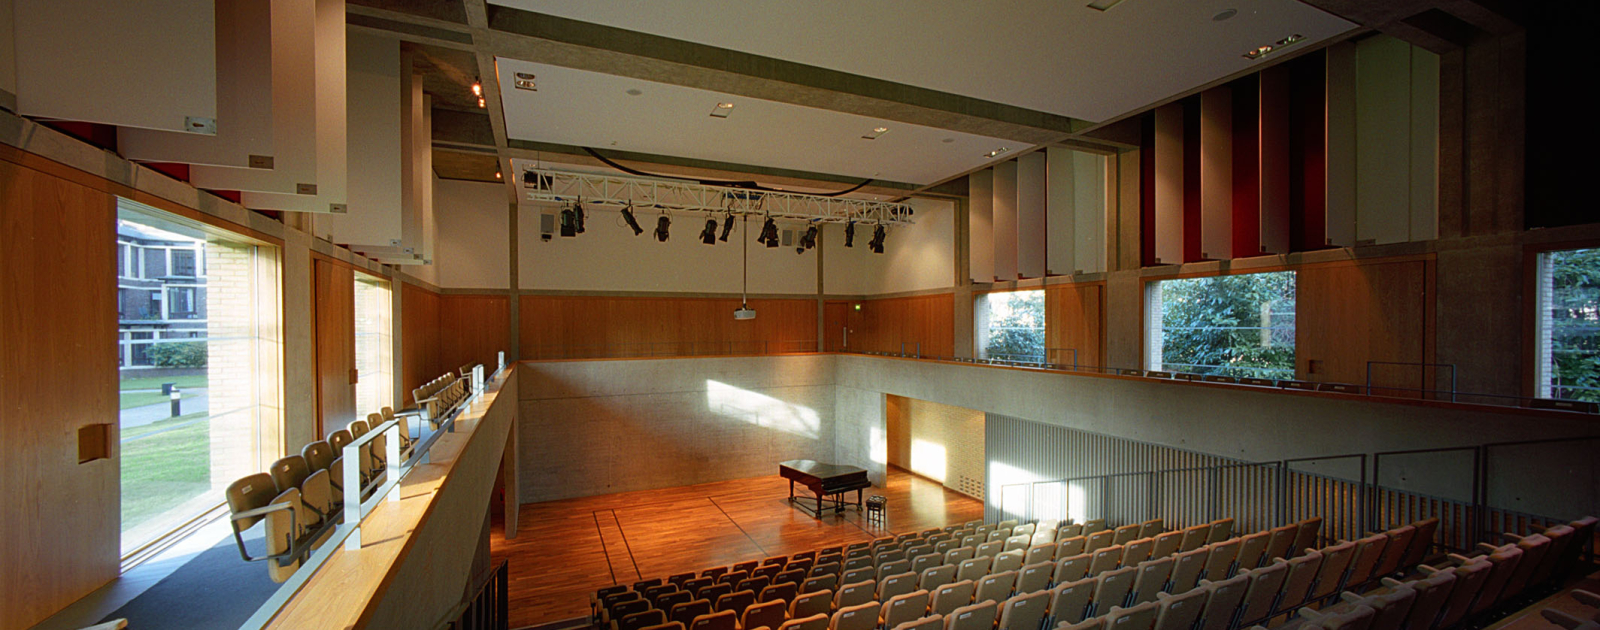 Auditorium Inside